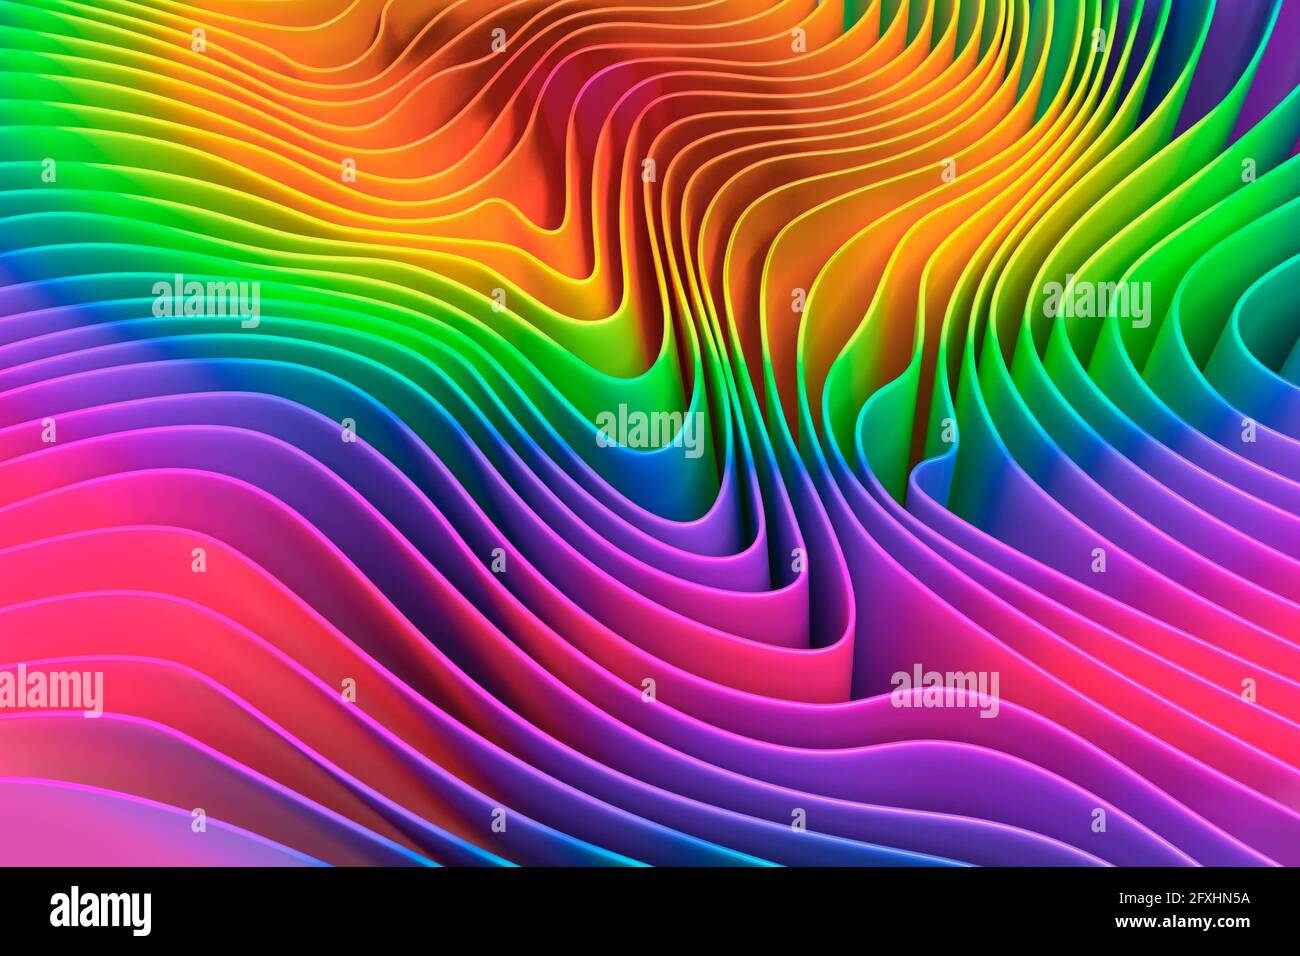 Imagen generada digitalmente patrón de rizado multicolor arco iris Foto de stock